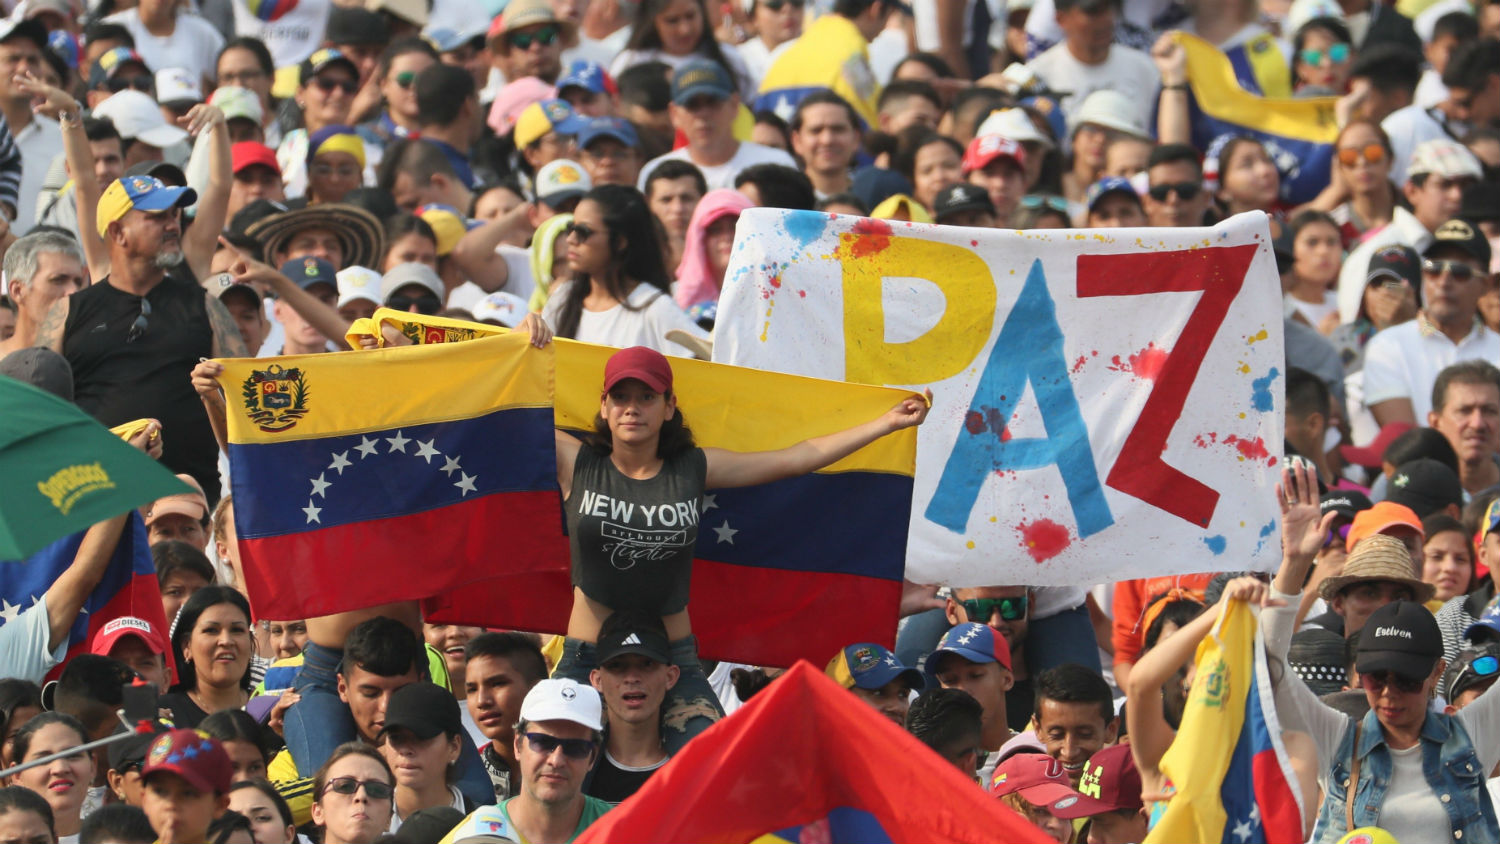 Venezuela Aid Live: 32 artistas, 9 países, 7 horas y 1 mensaje [Concierto completo]